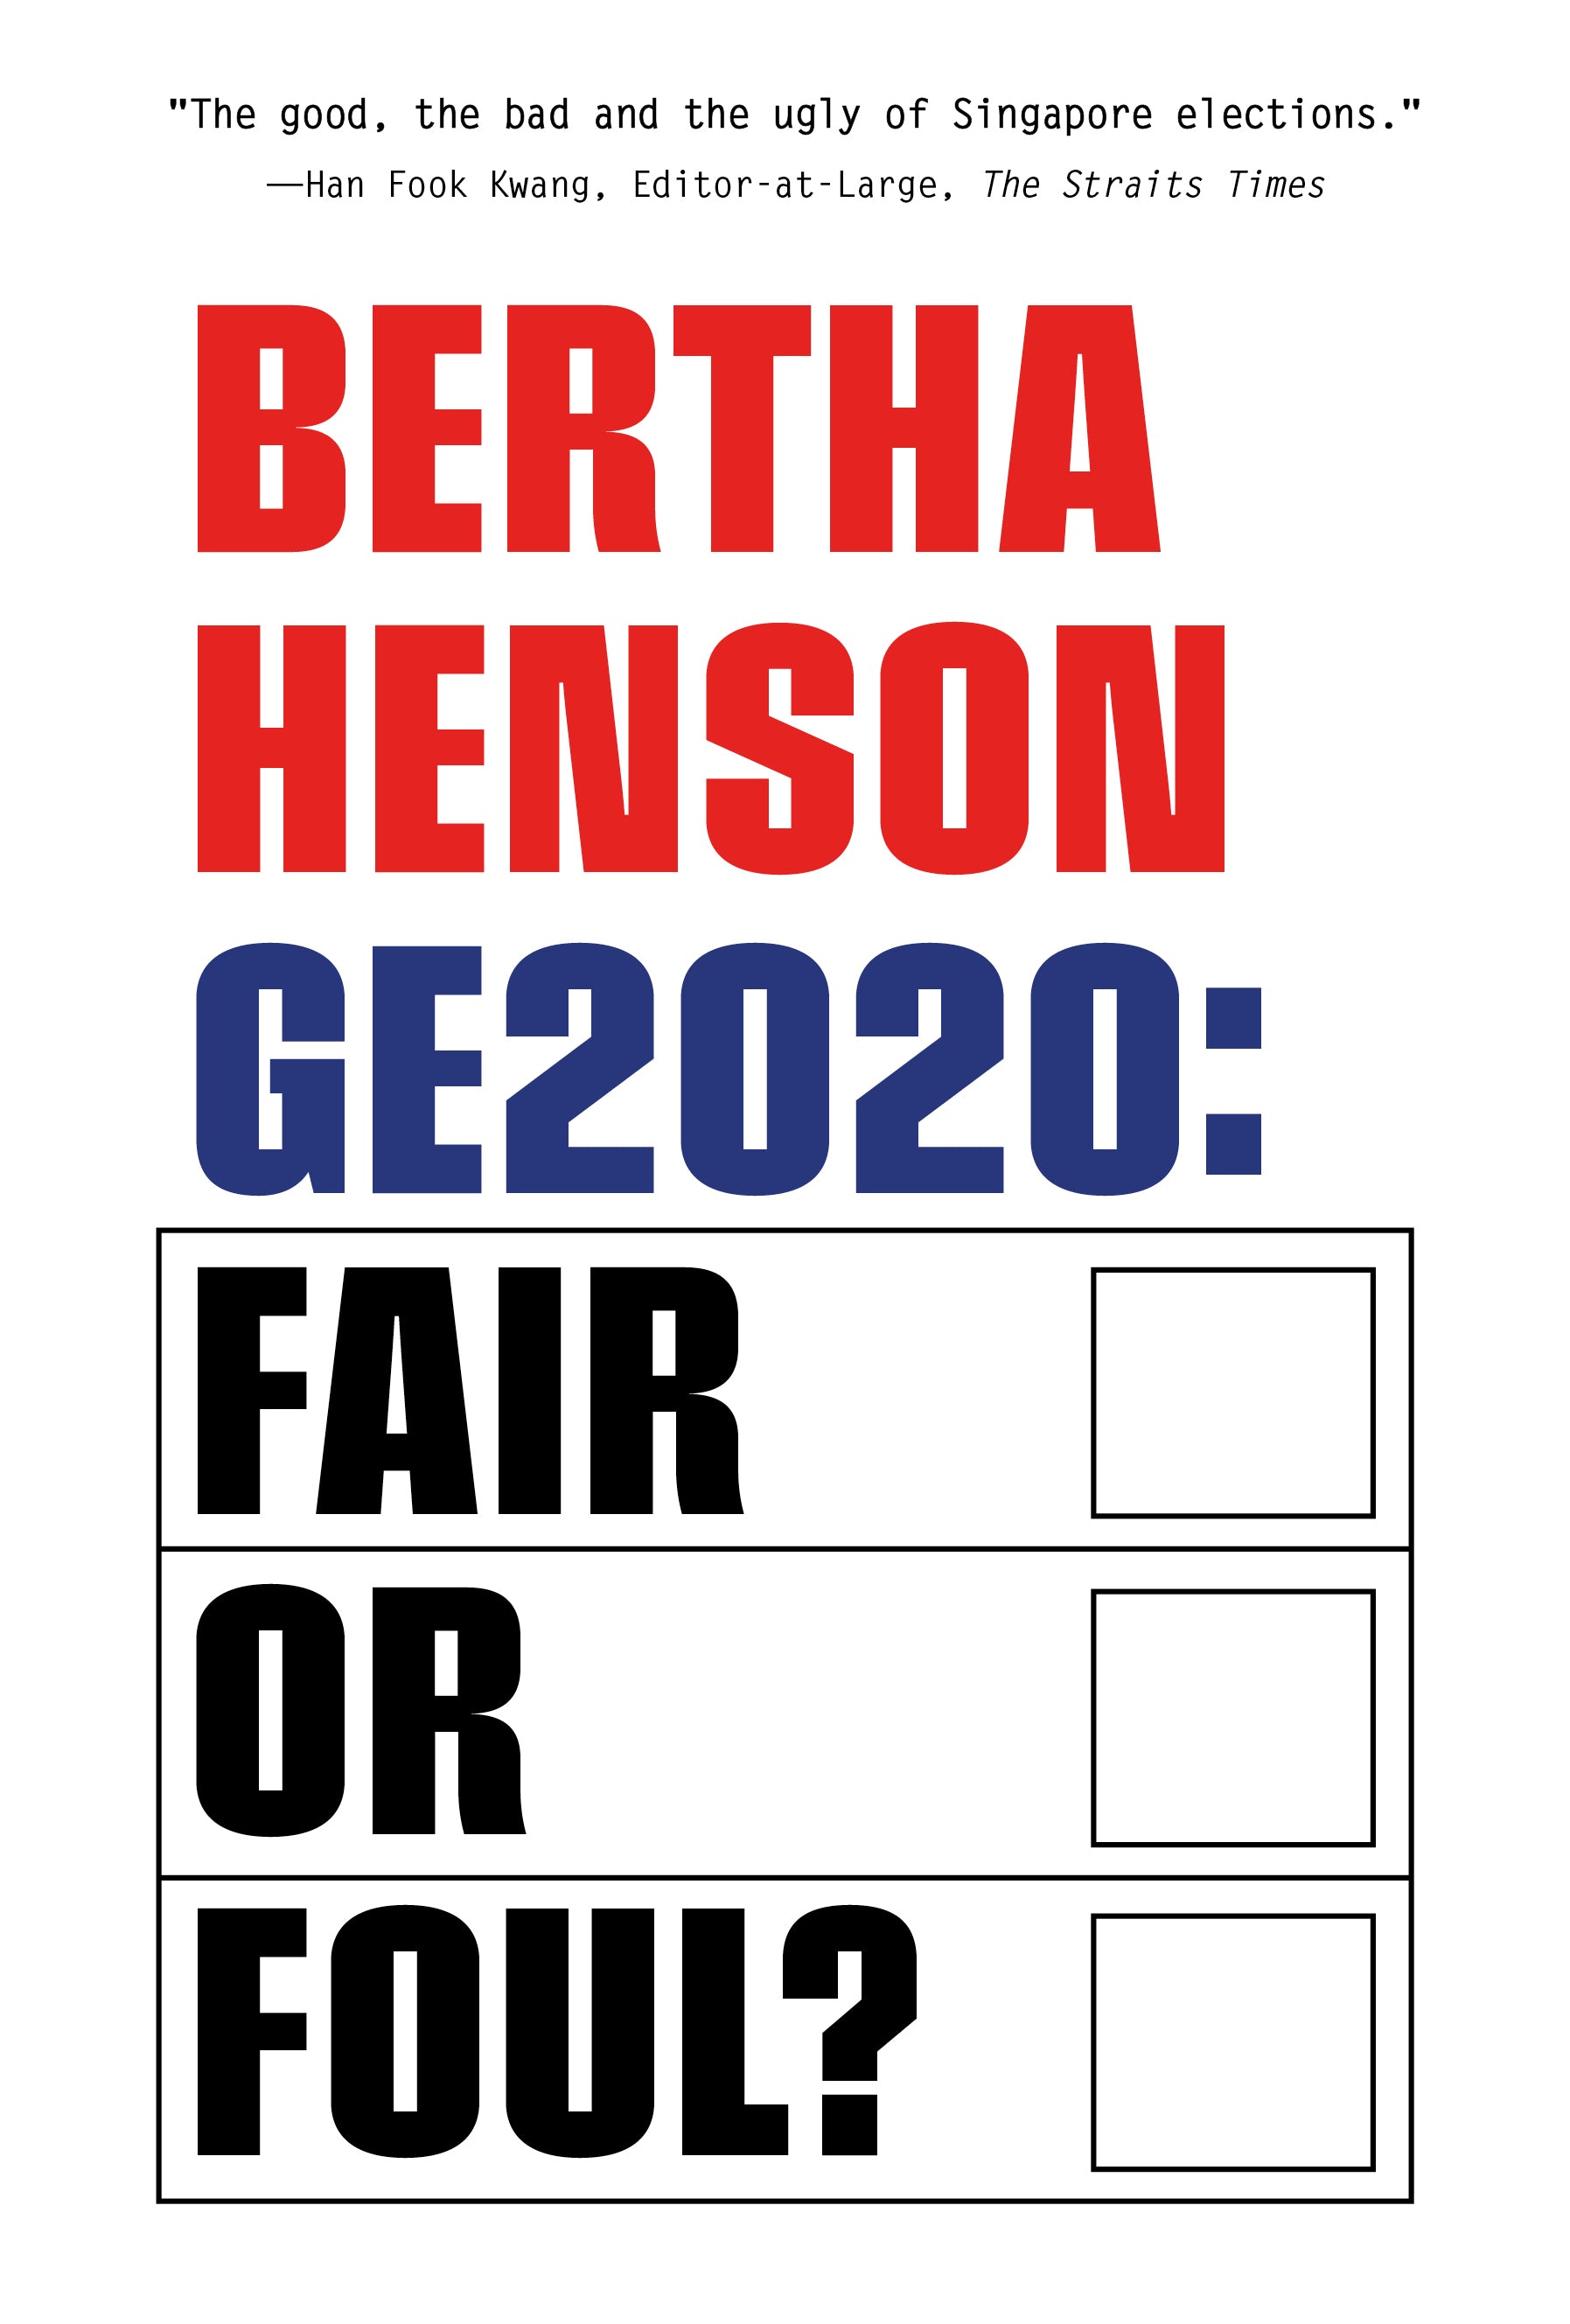 GE2020: Fair or Foul?